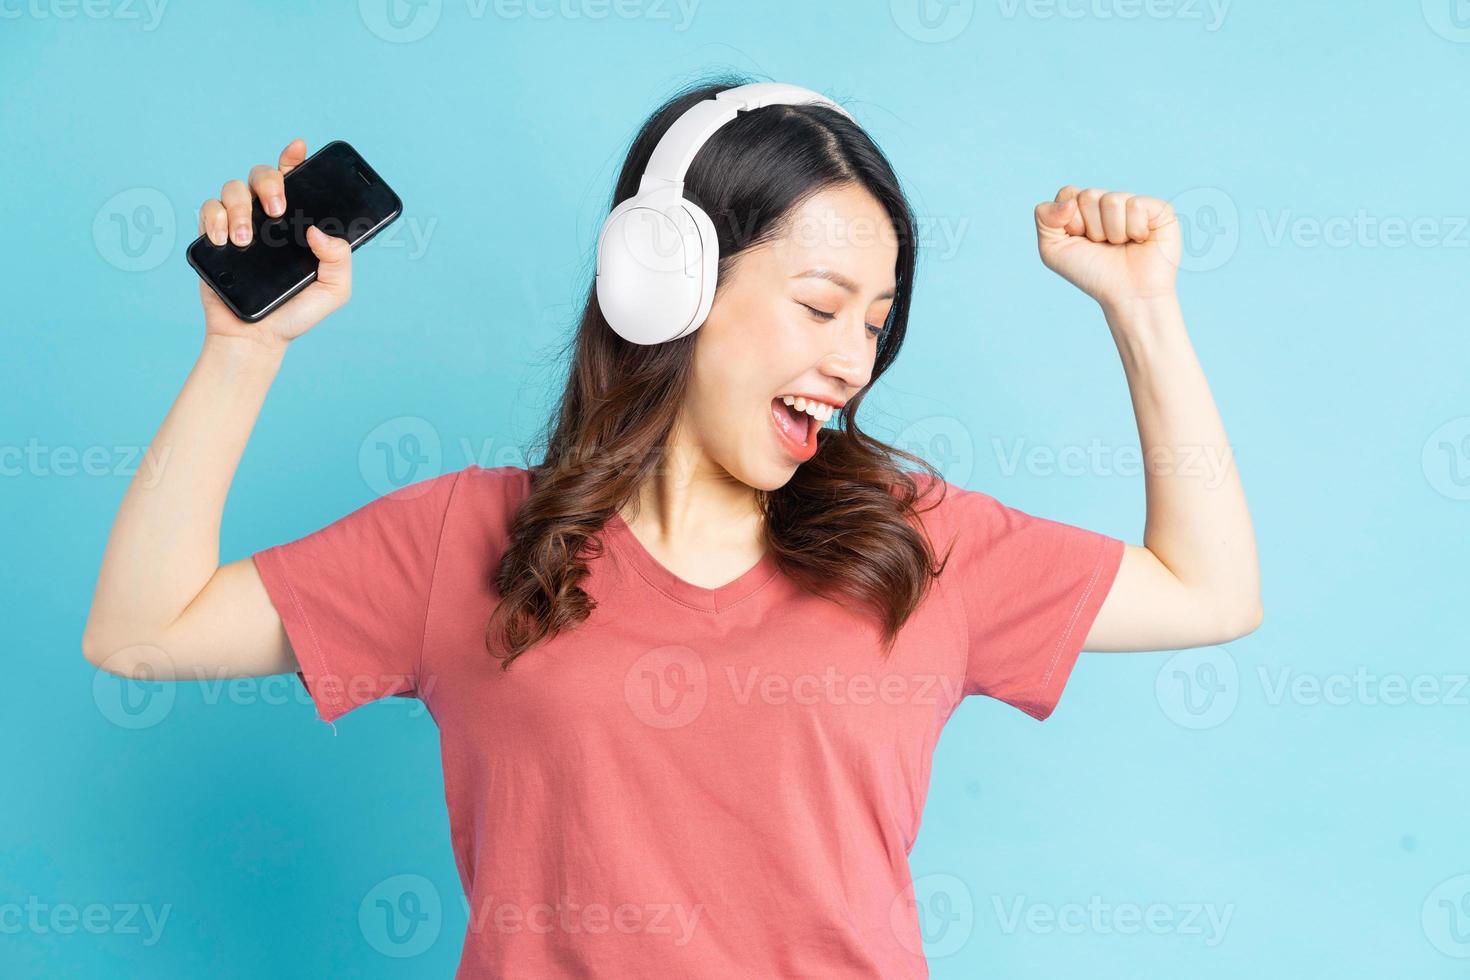 mooie aziatische vrouw die witte draadloze hoofdtelefoons draagt en telefoon in haar hand houdt terwijl ze op muziek danst foto